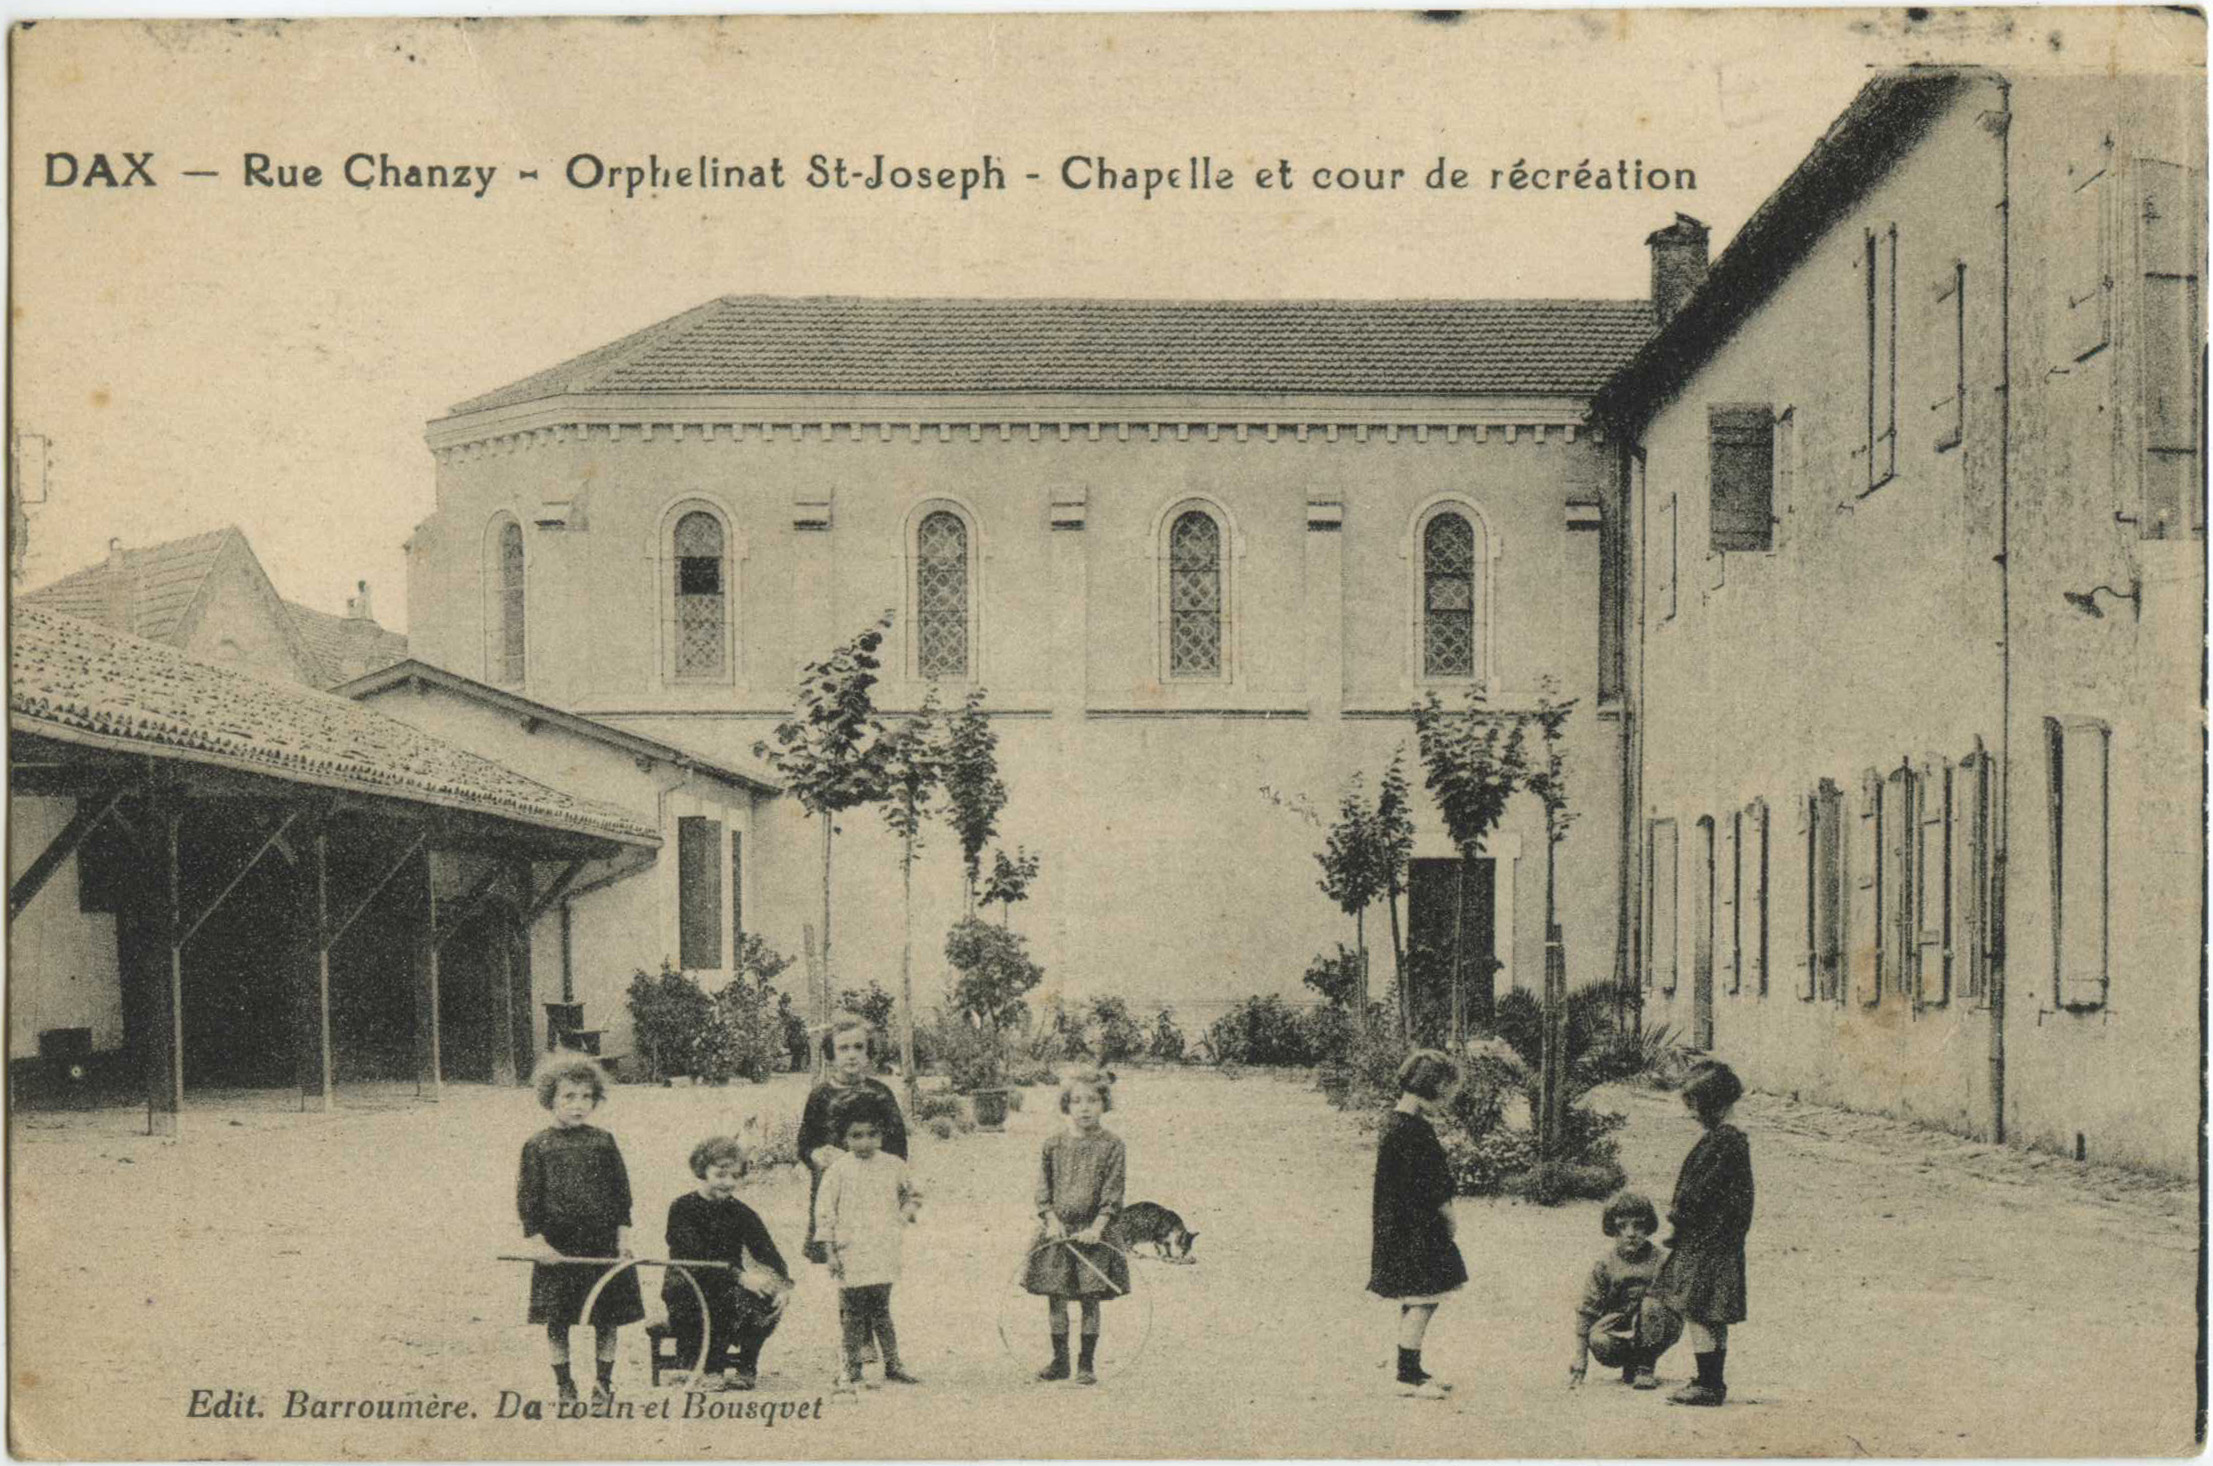 Dax - Rue Chanzy - Orphelinat St-Joseph - Chapelle et cour de récréation